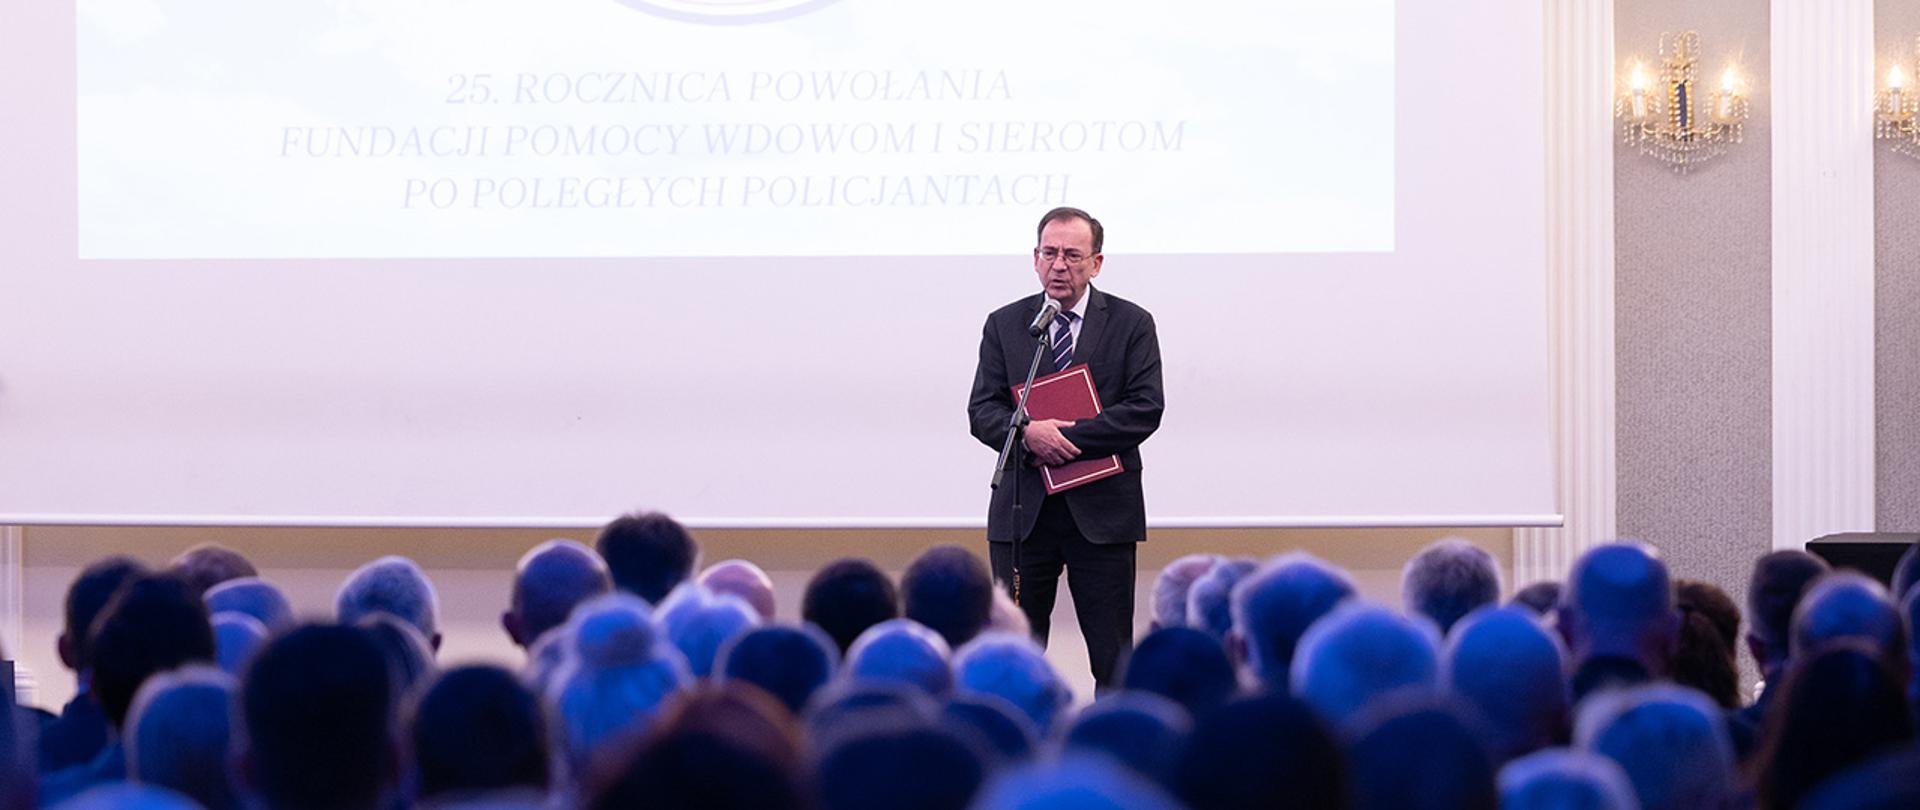 Minister Mariusz Kamiński podczas uroczystości z okazji 25-lecia powstania Fundacji Pomocy Wdowom i Sierotom po Poległych Policjantach